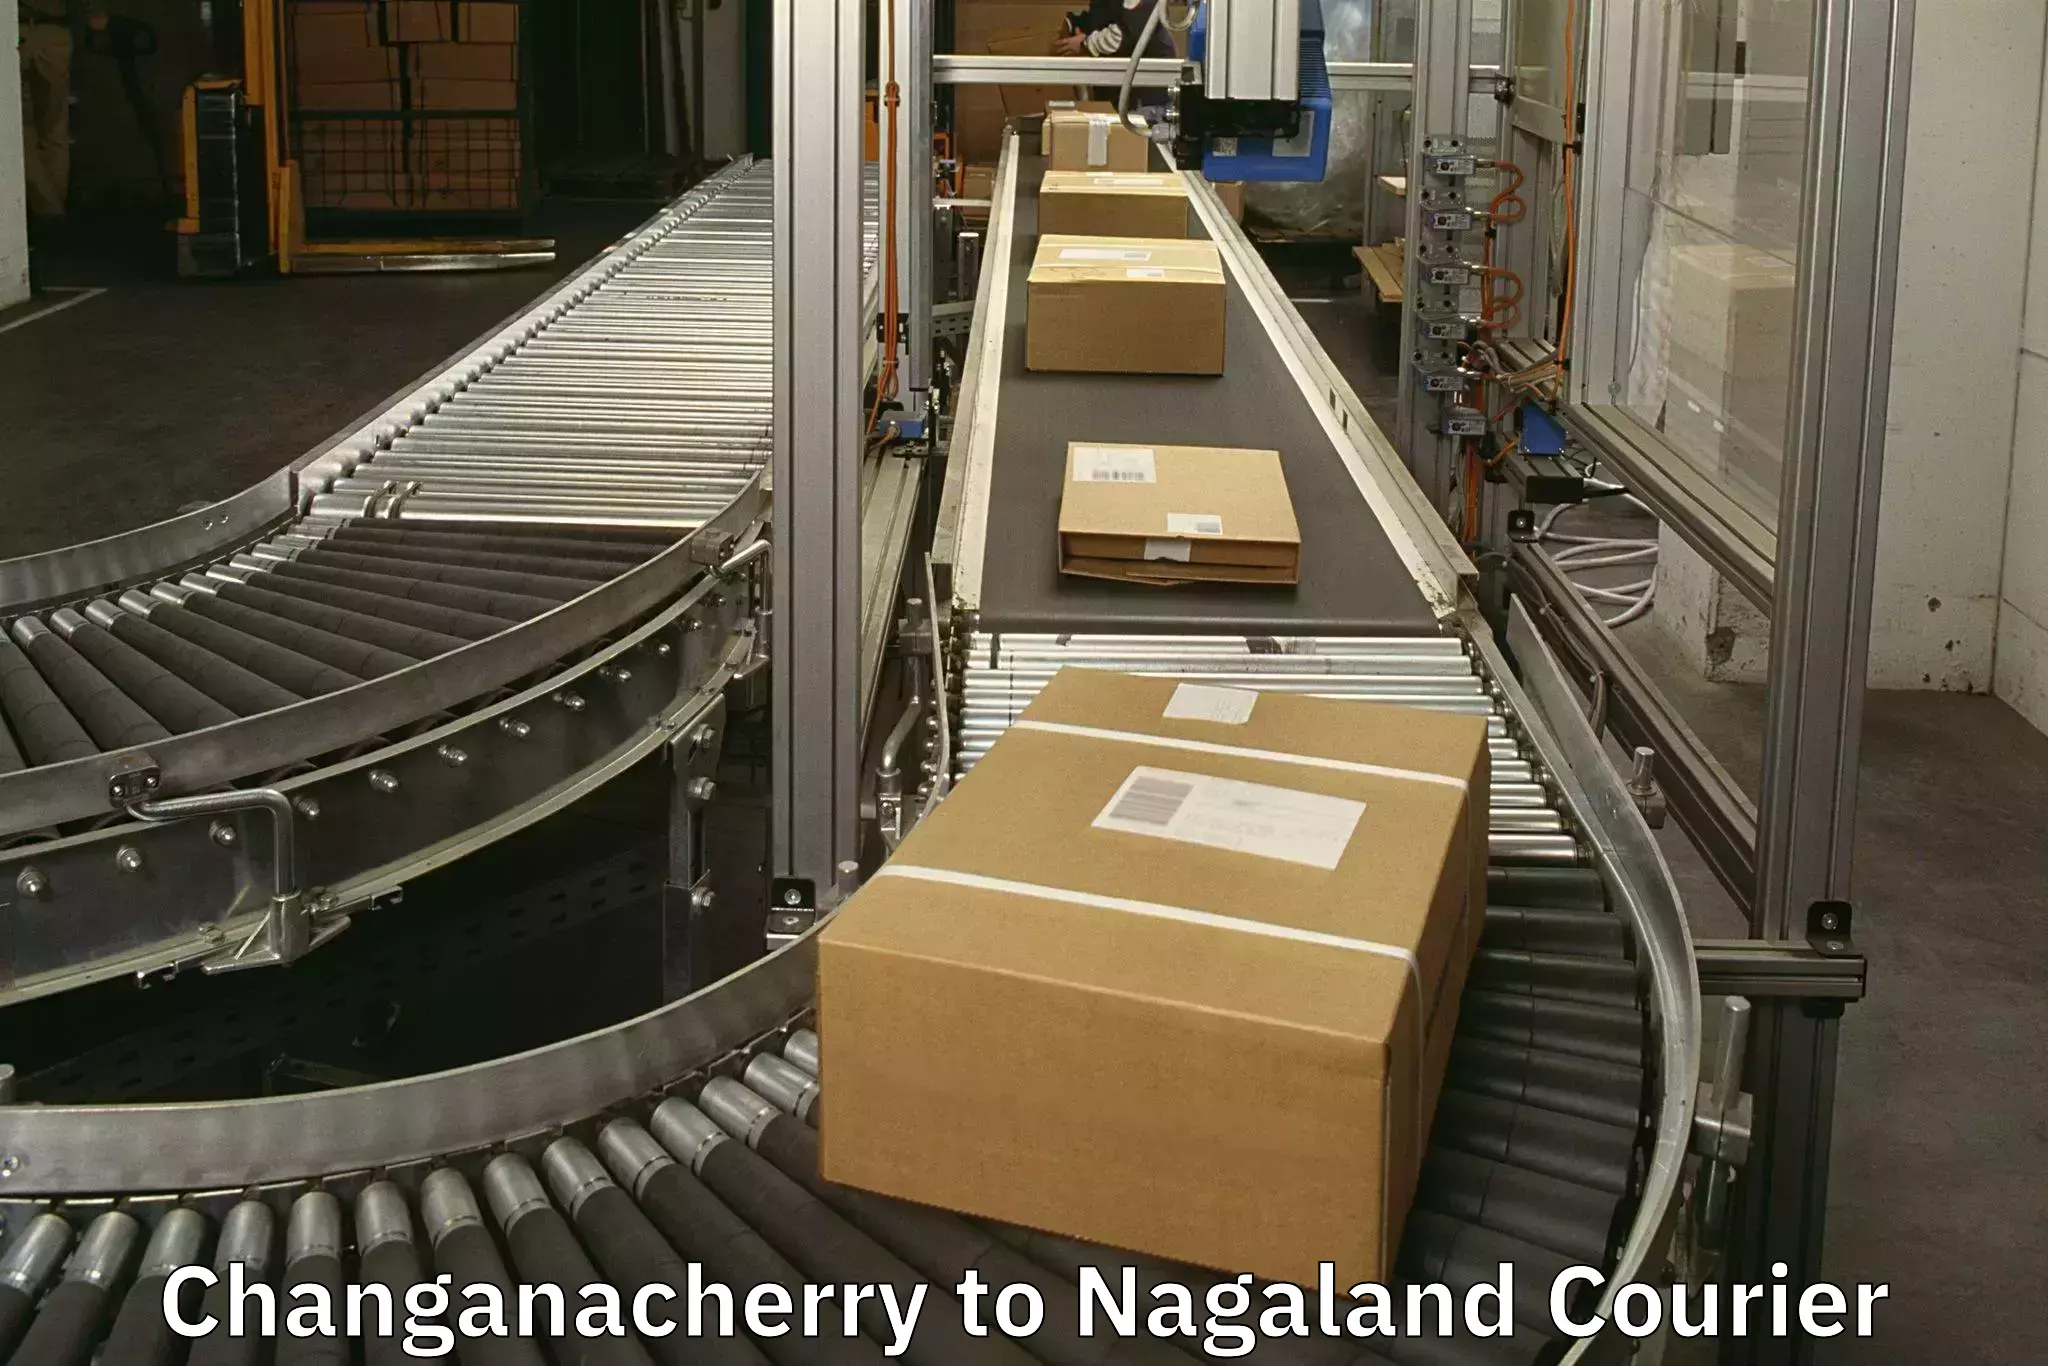 Door-to-door baggage service Changanacherry to Nagaland